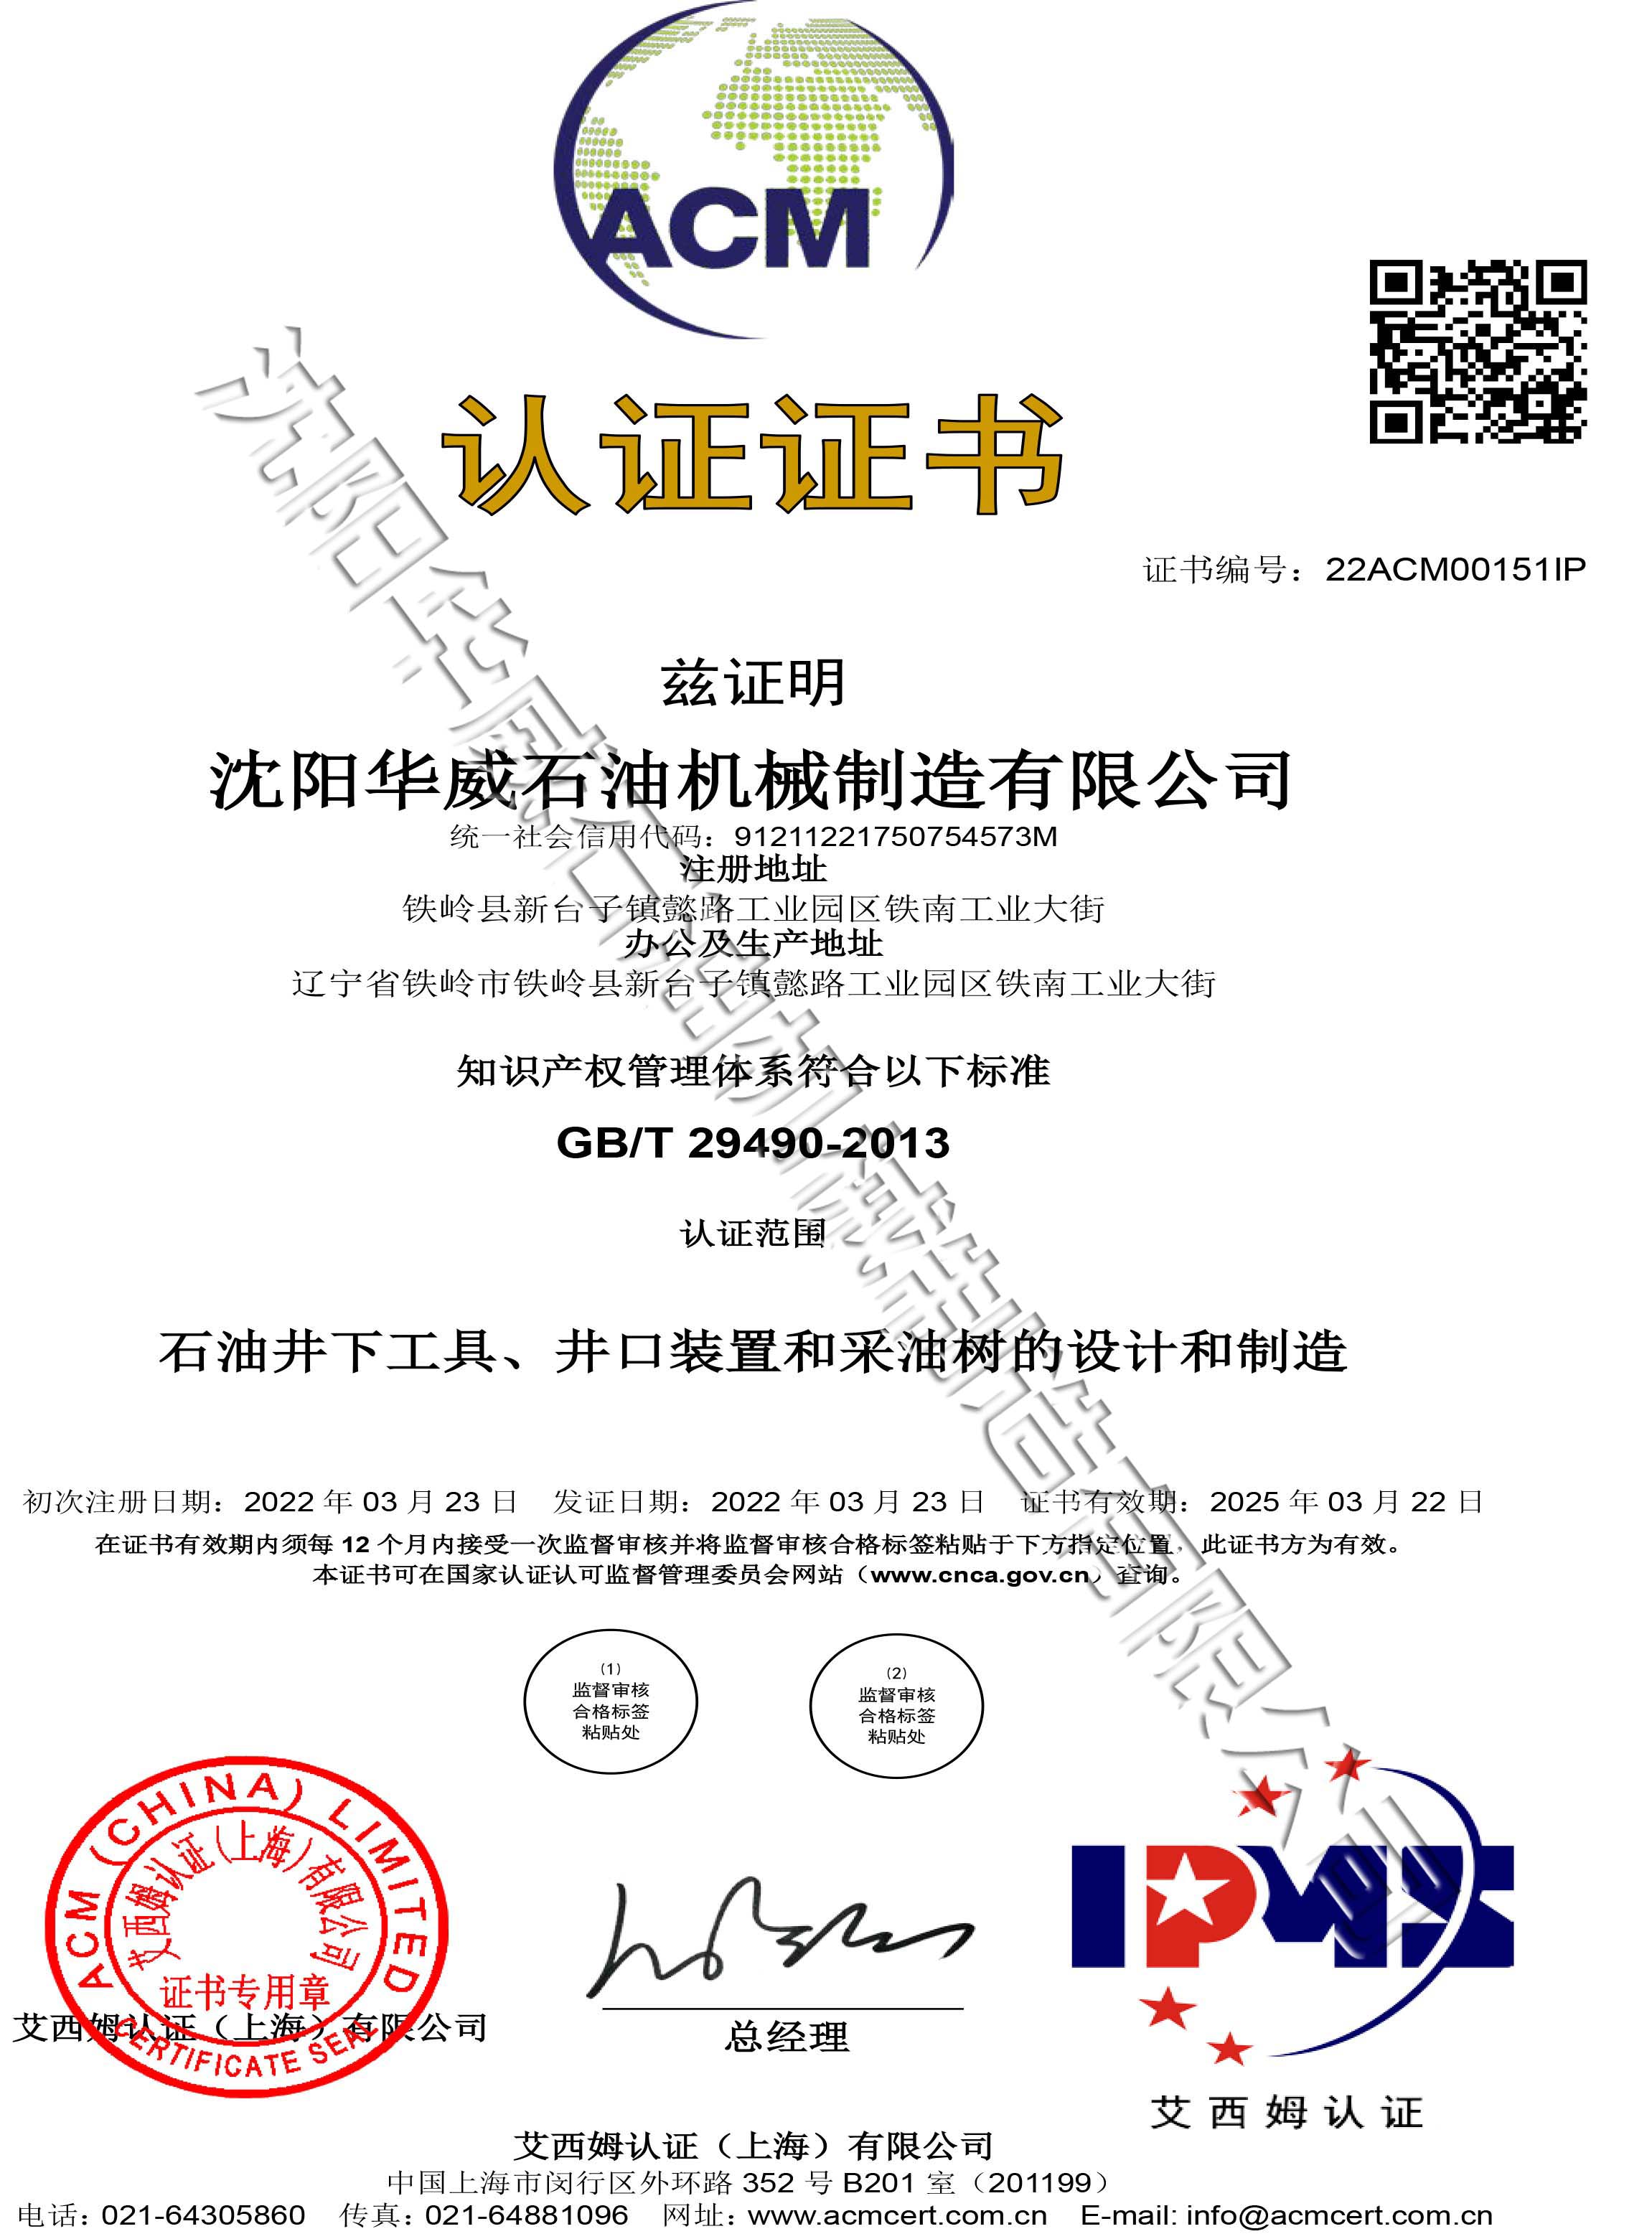 龙潭知识产权管理体系认证证书